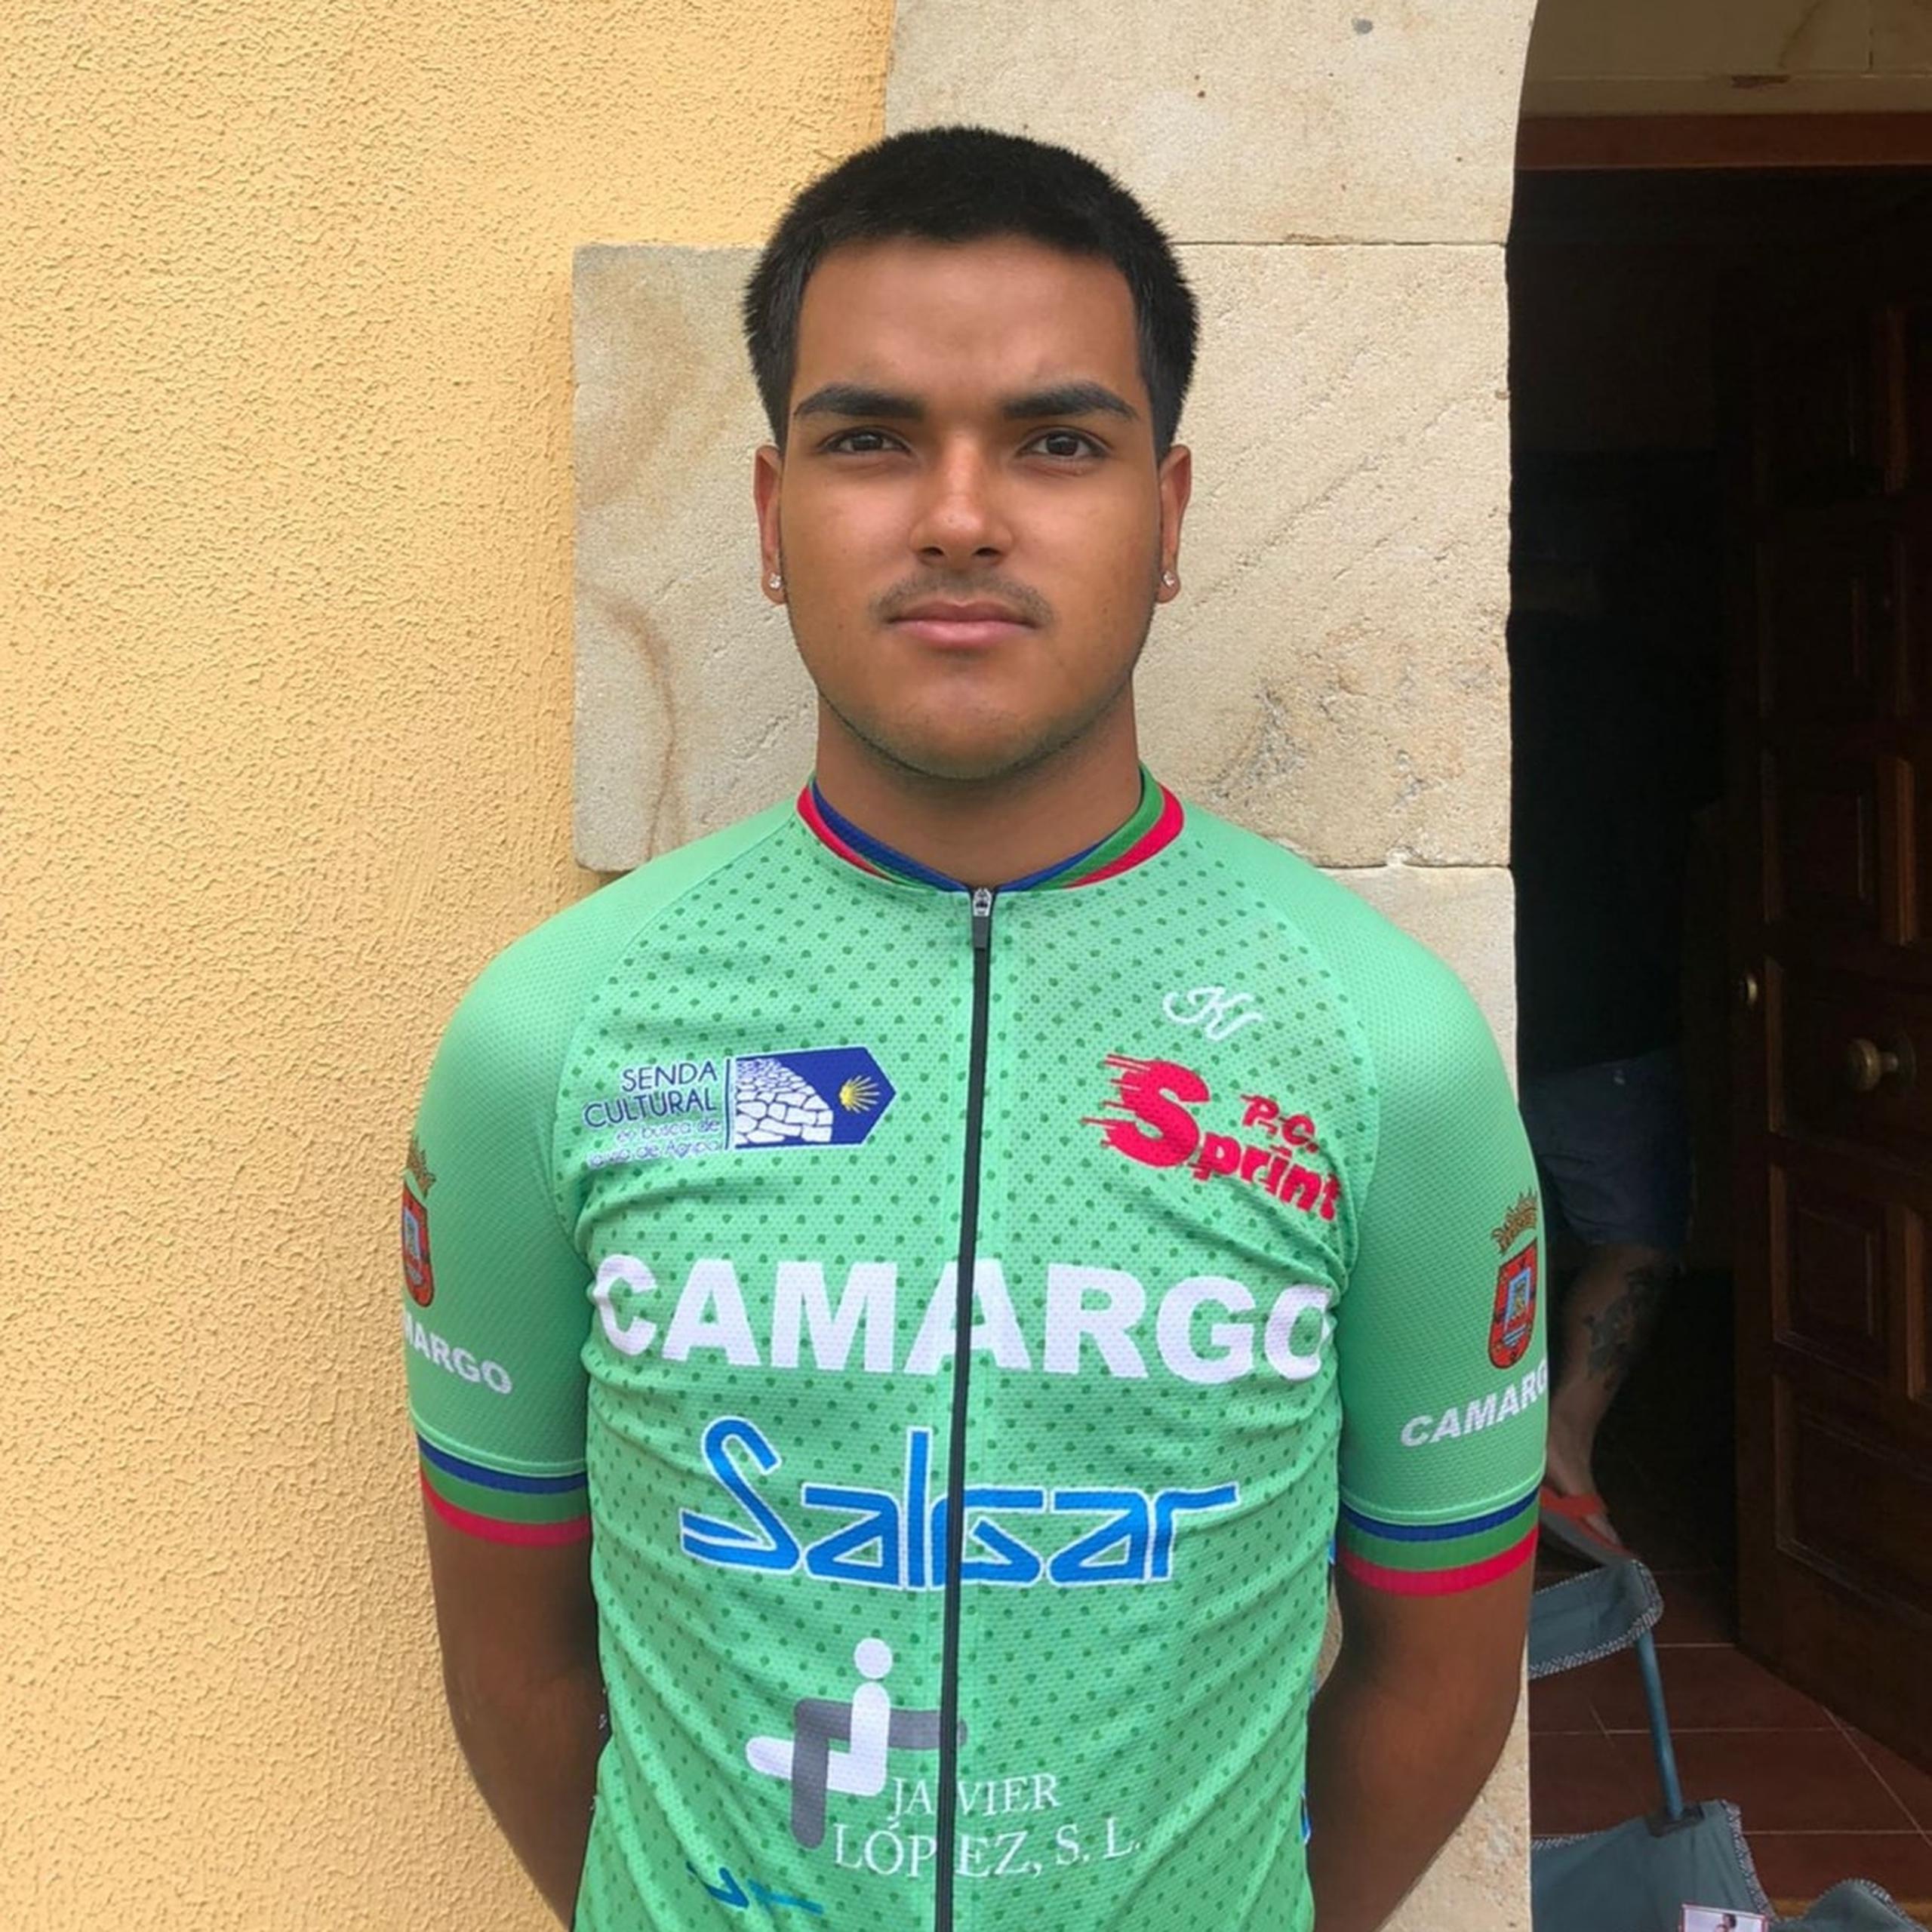 Este es Derex Segarra Alvarado, el nuevo ciclista boricua boricua en emigrar a España para competir.